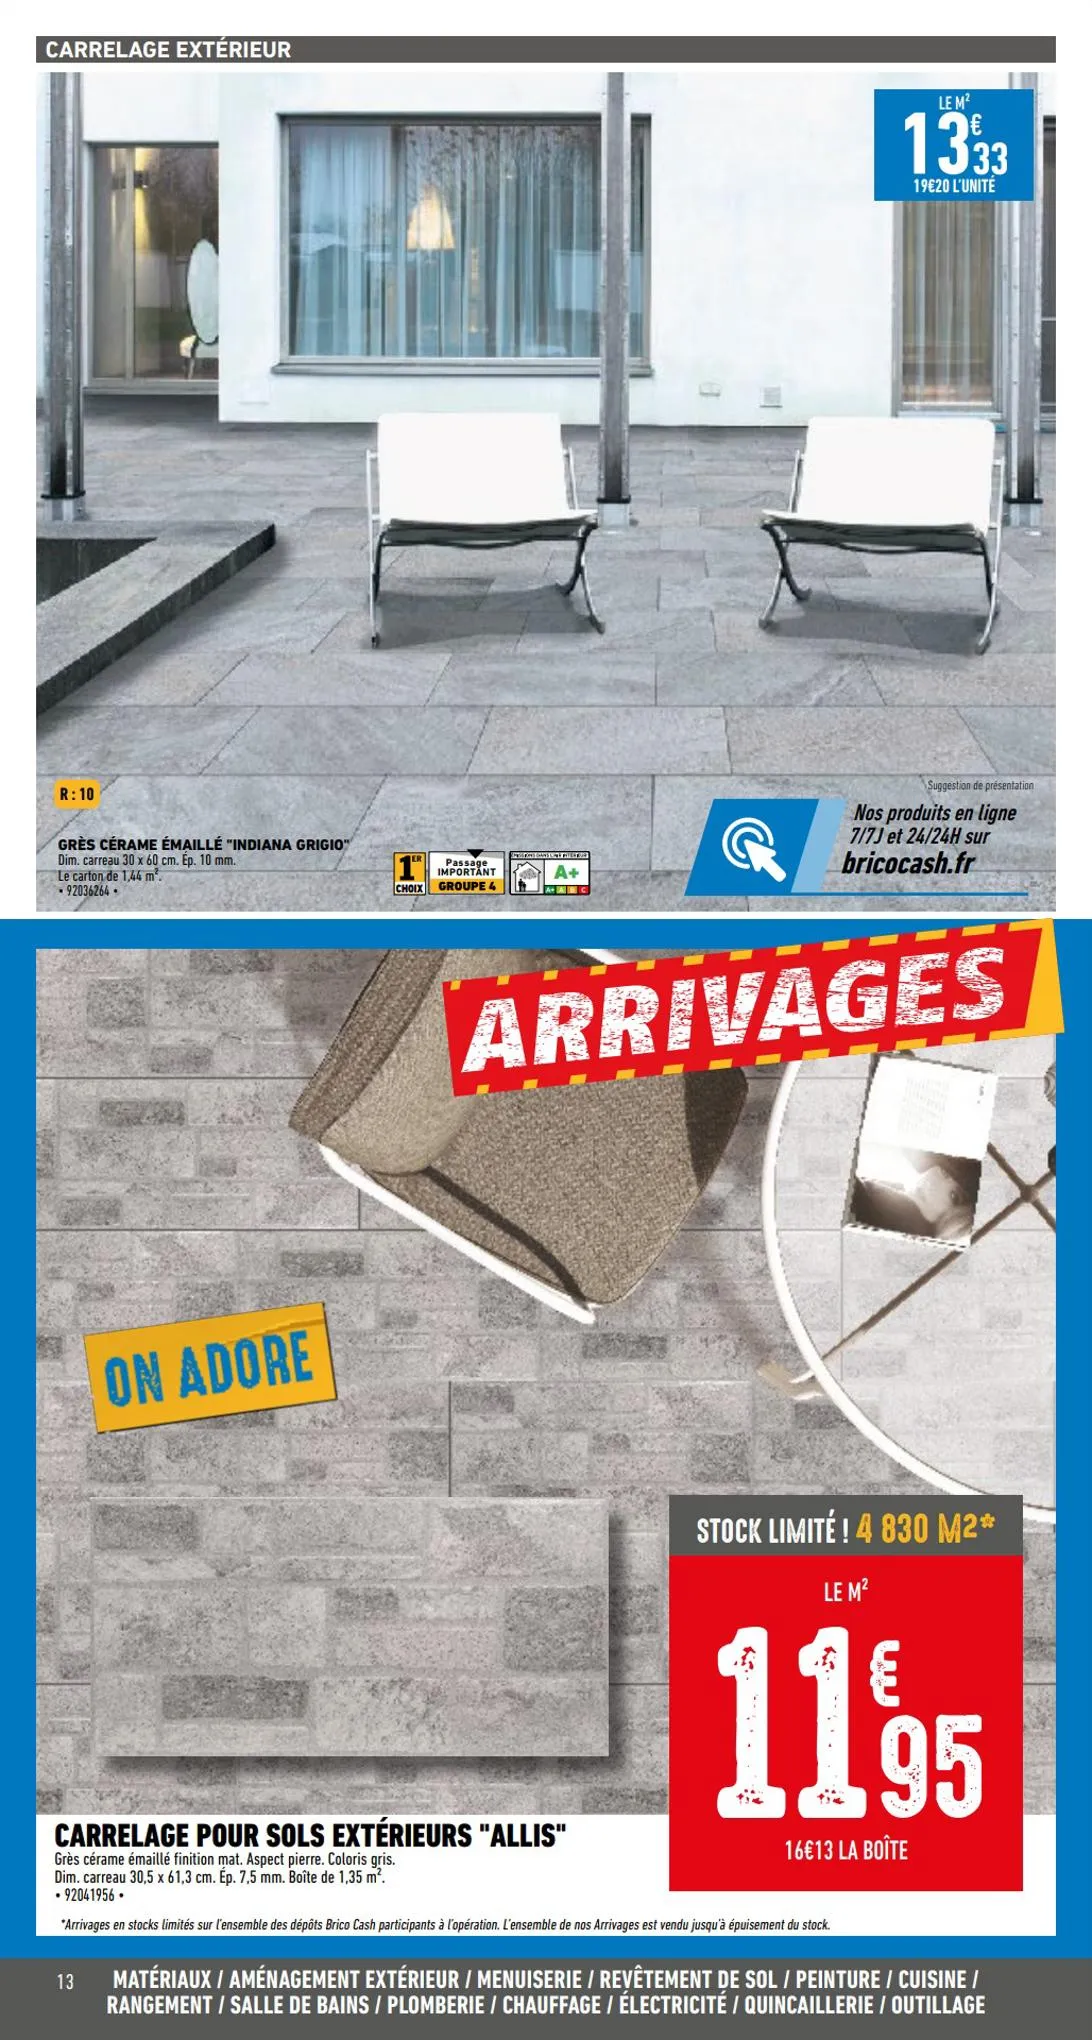 Catalogue Catalogue bâti & aménagement extérieur, page 00013